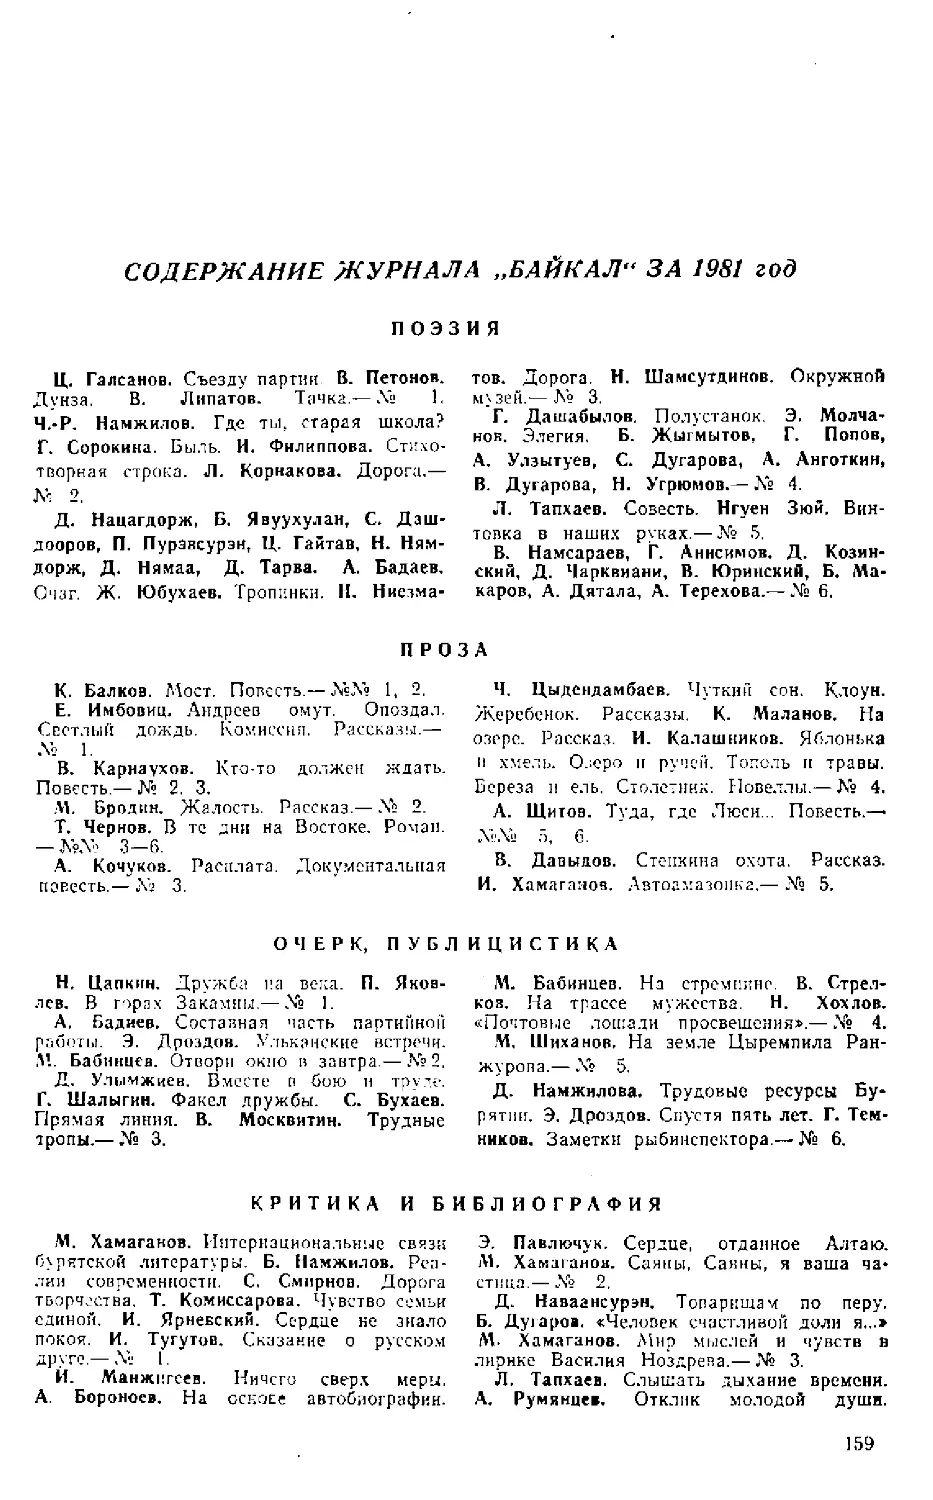 ﻿Содержание журнала Байкал за 1981 го